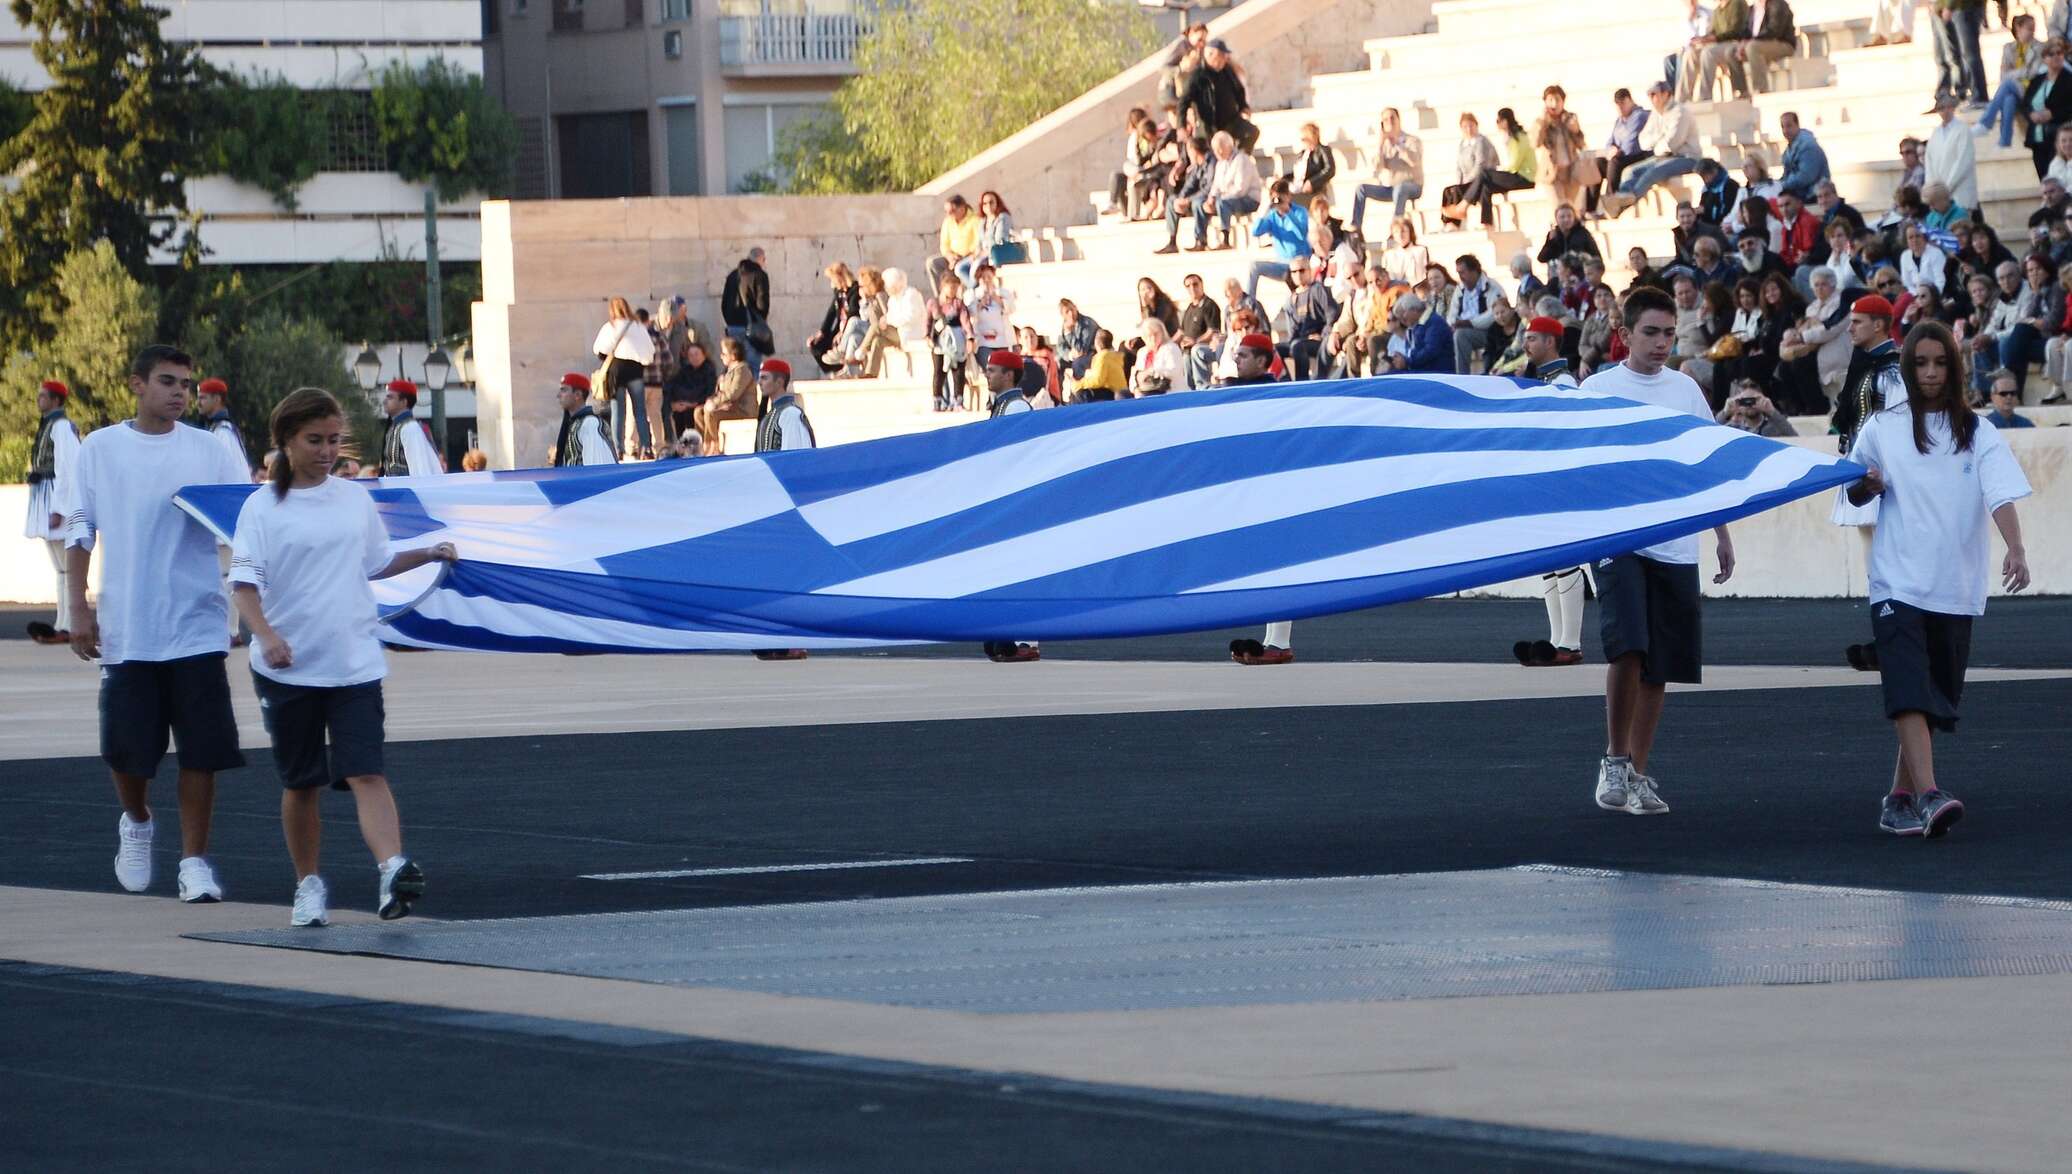 Долгов греции. Самый большой флаг Греции. Вынос флага лежа. Греция из Кыргызстана. Неожиданный вынос флага мероприятия.